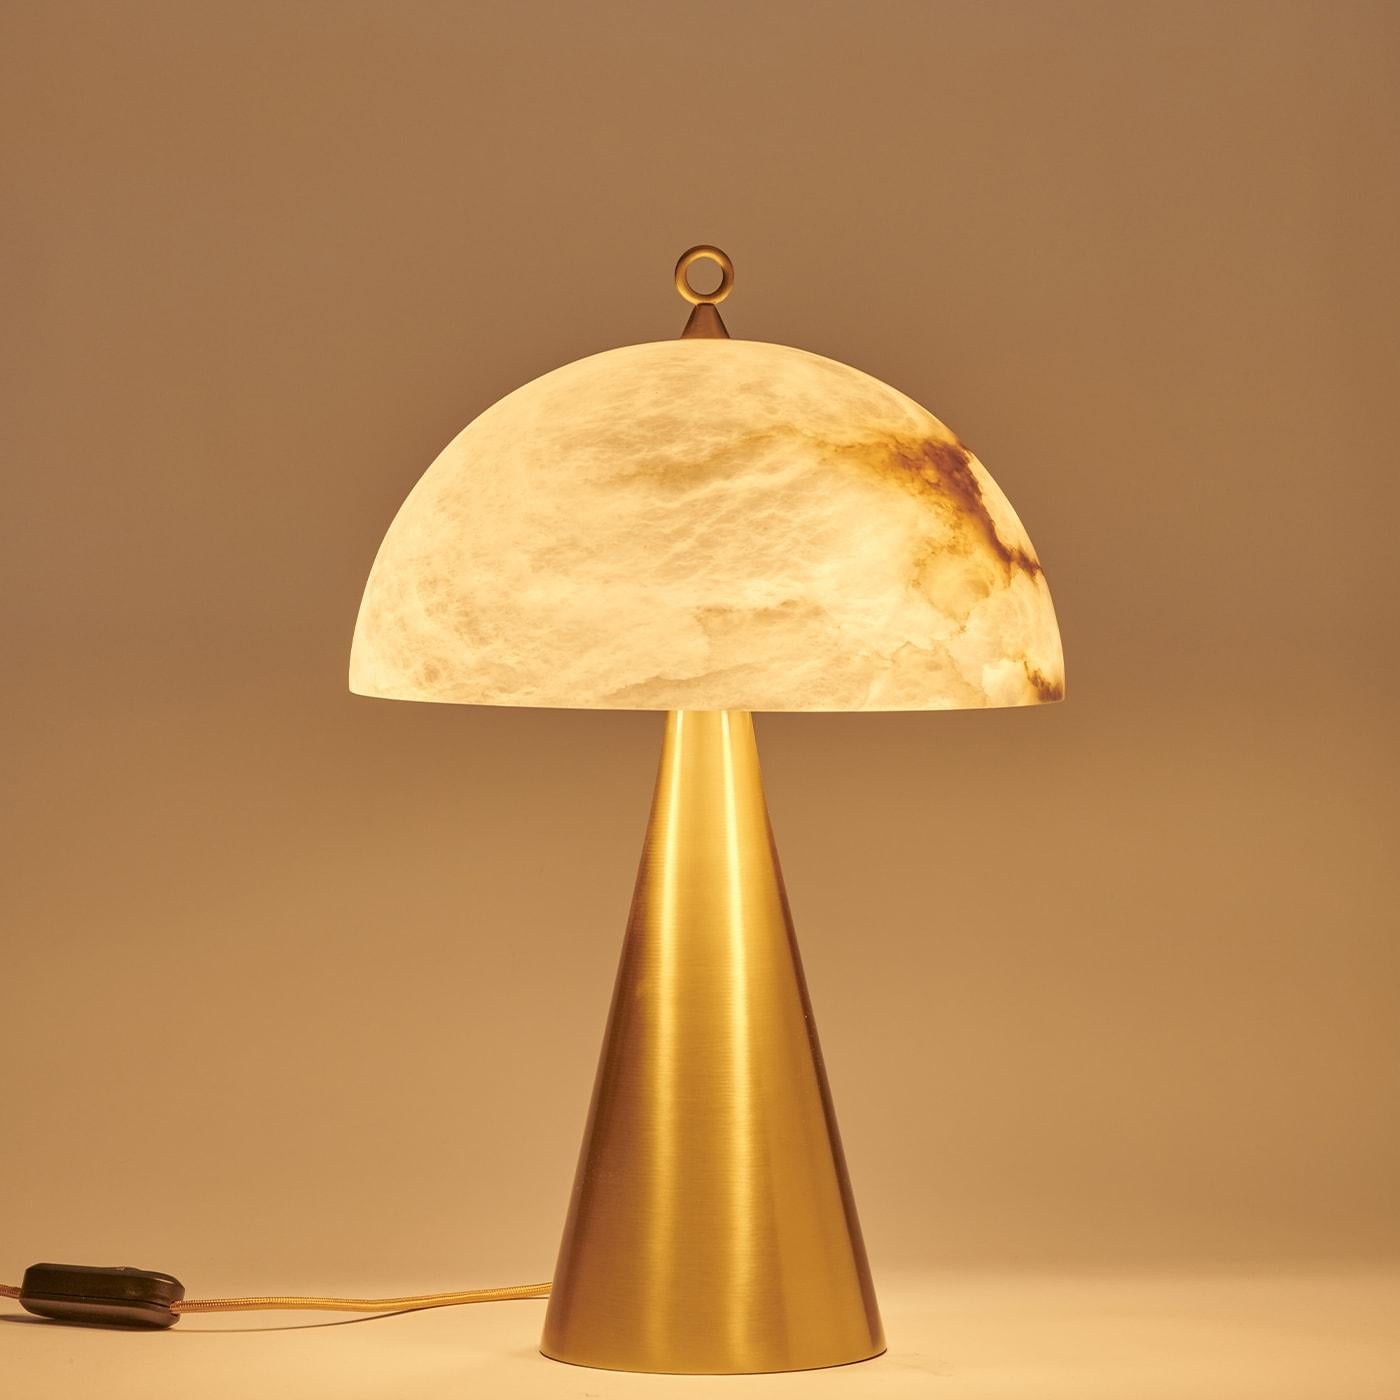 Née du succès de notre modèle Funghetto, la lampe de table Fungotto présente des dimensions plus grandes et plus audacieuses, tout en conservant la simplicité de ses formes. L'abat-jour semi-sphérique en albâtre, dont les veines sont soulignées par